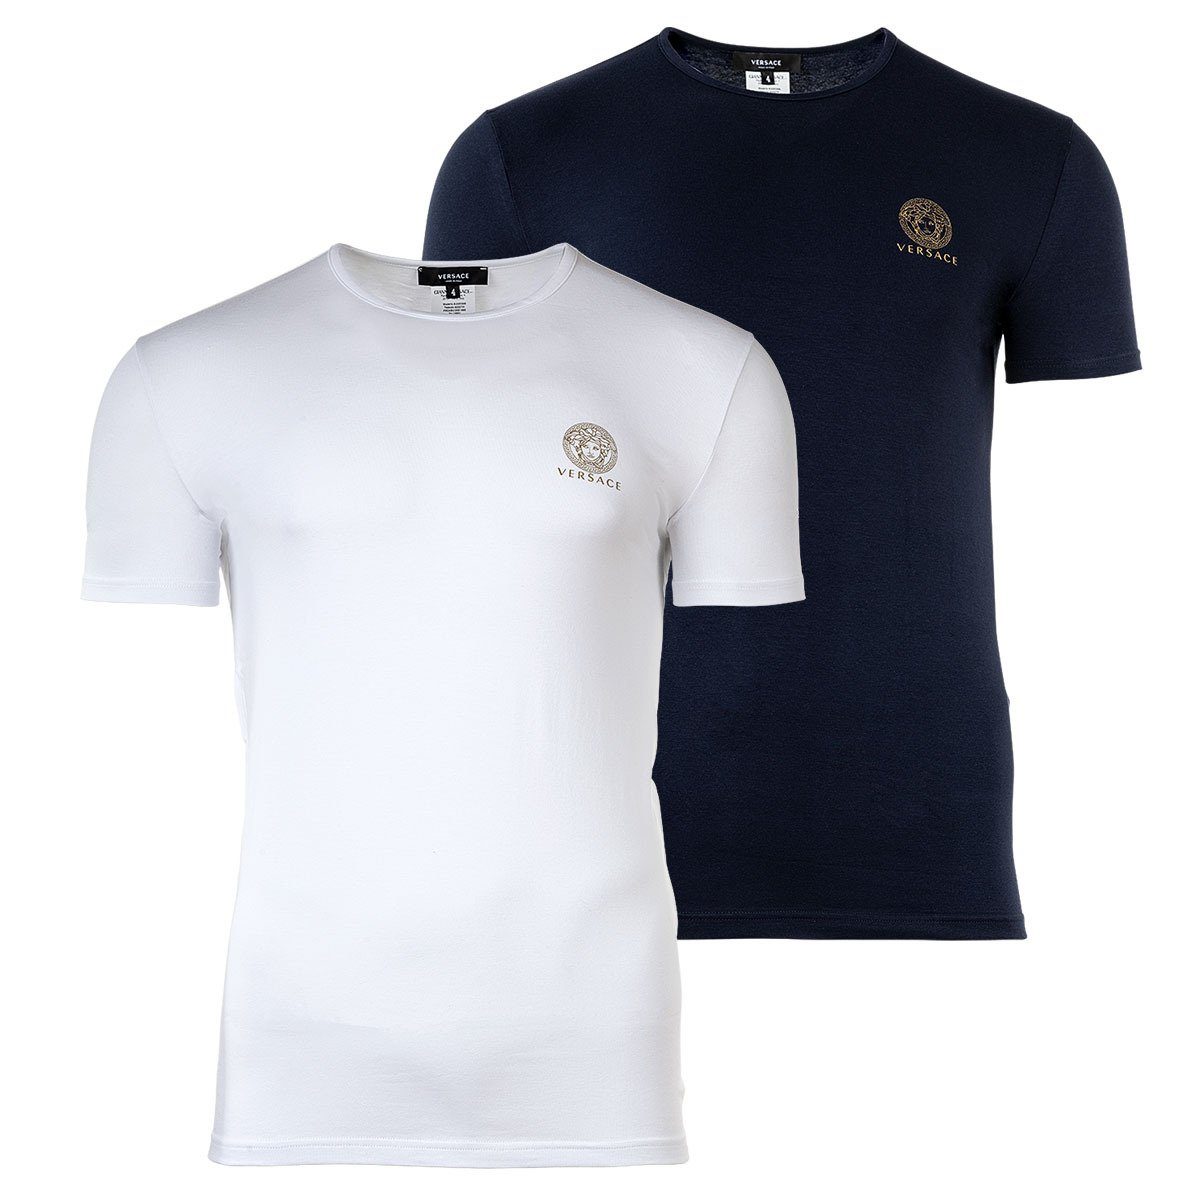 Versace T-Shirt Herren T-Shirt, 2er Pack - Unterhemd, Rundhals Weiß/Blau